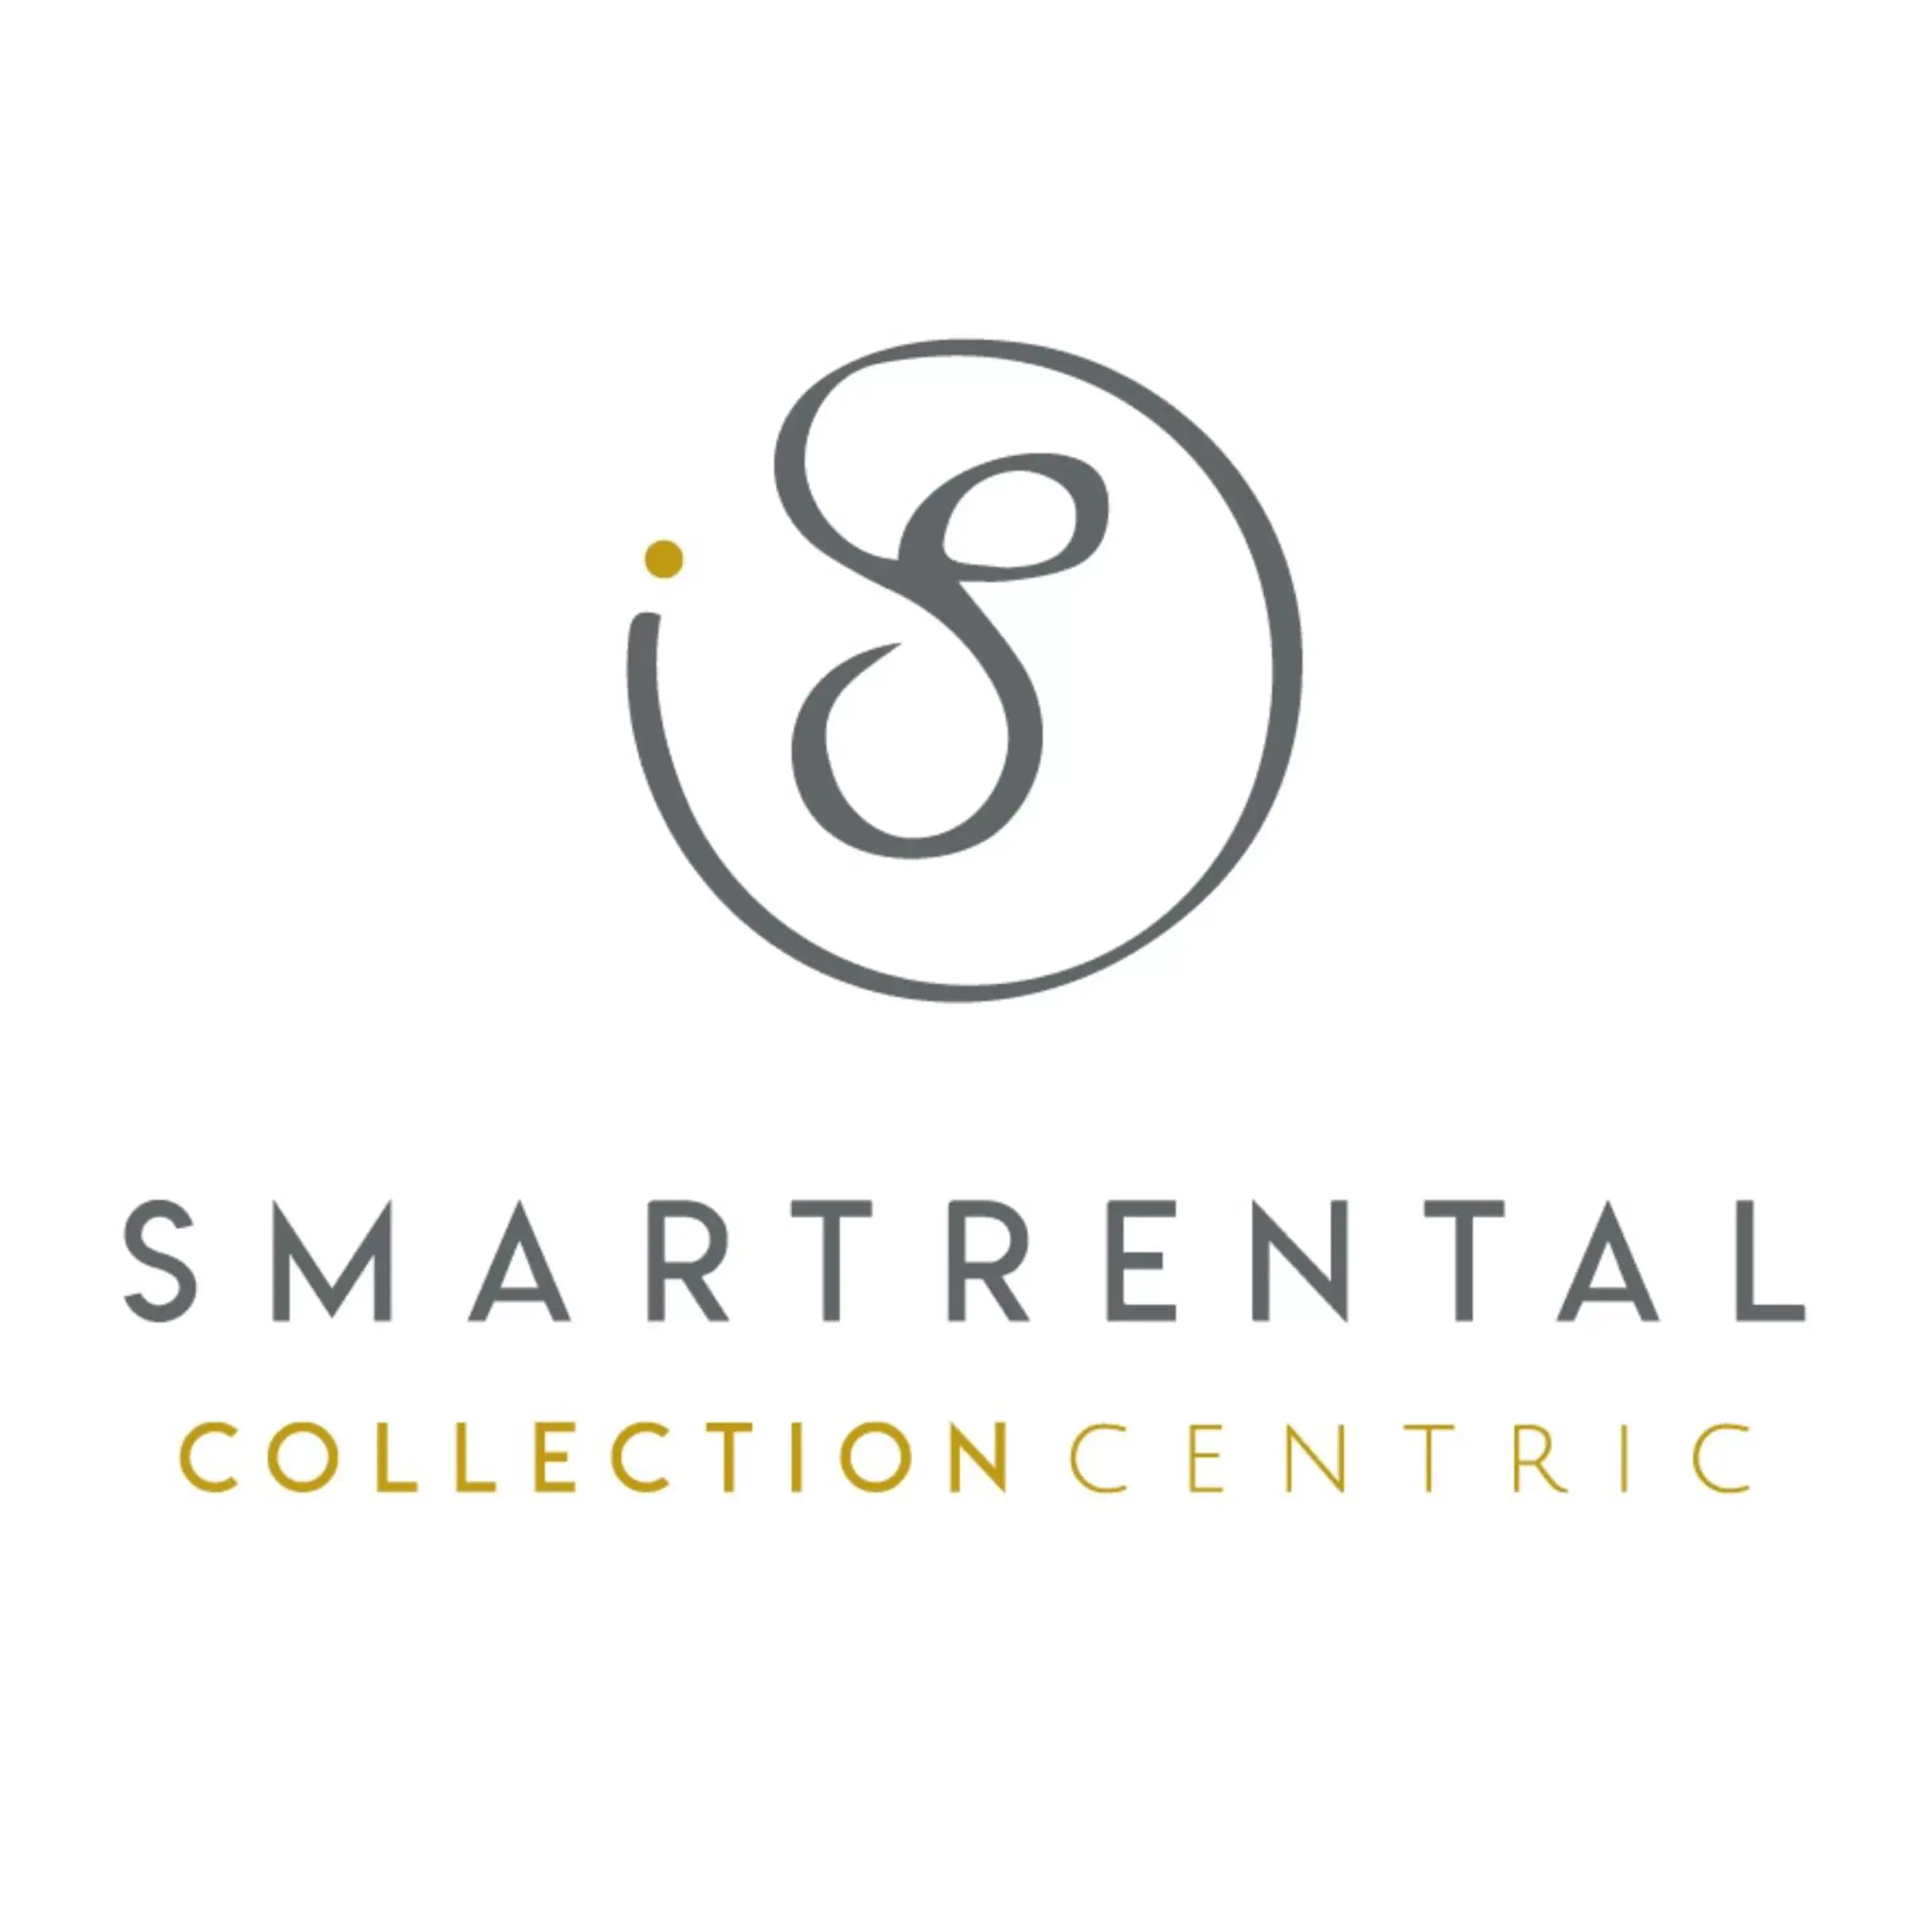 Smartrental Collection Gran Vía Centric